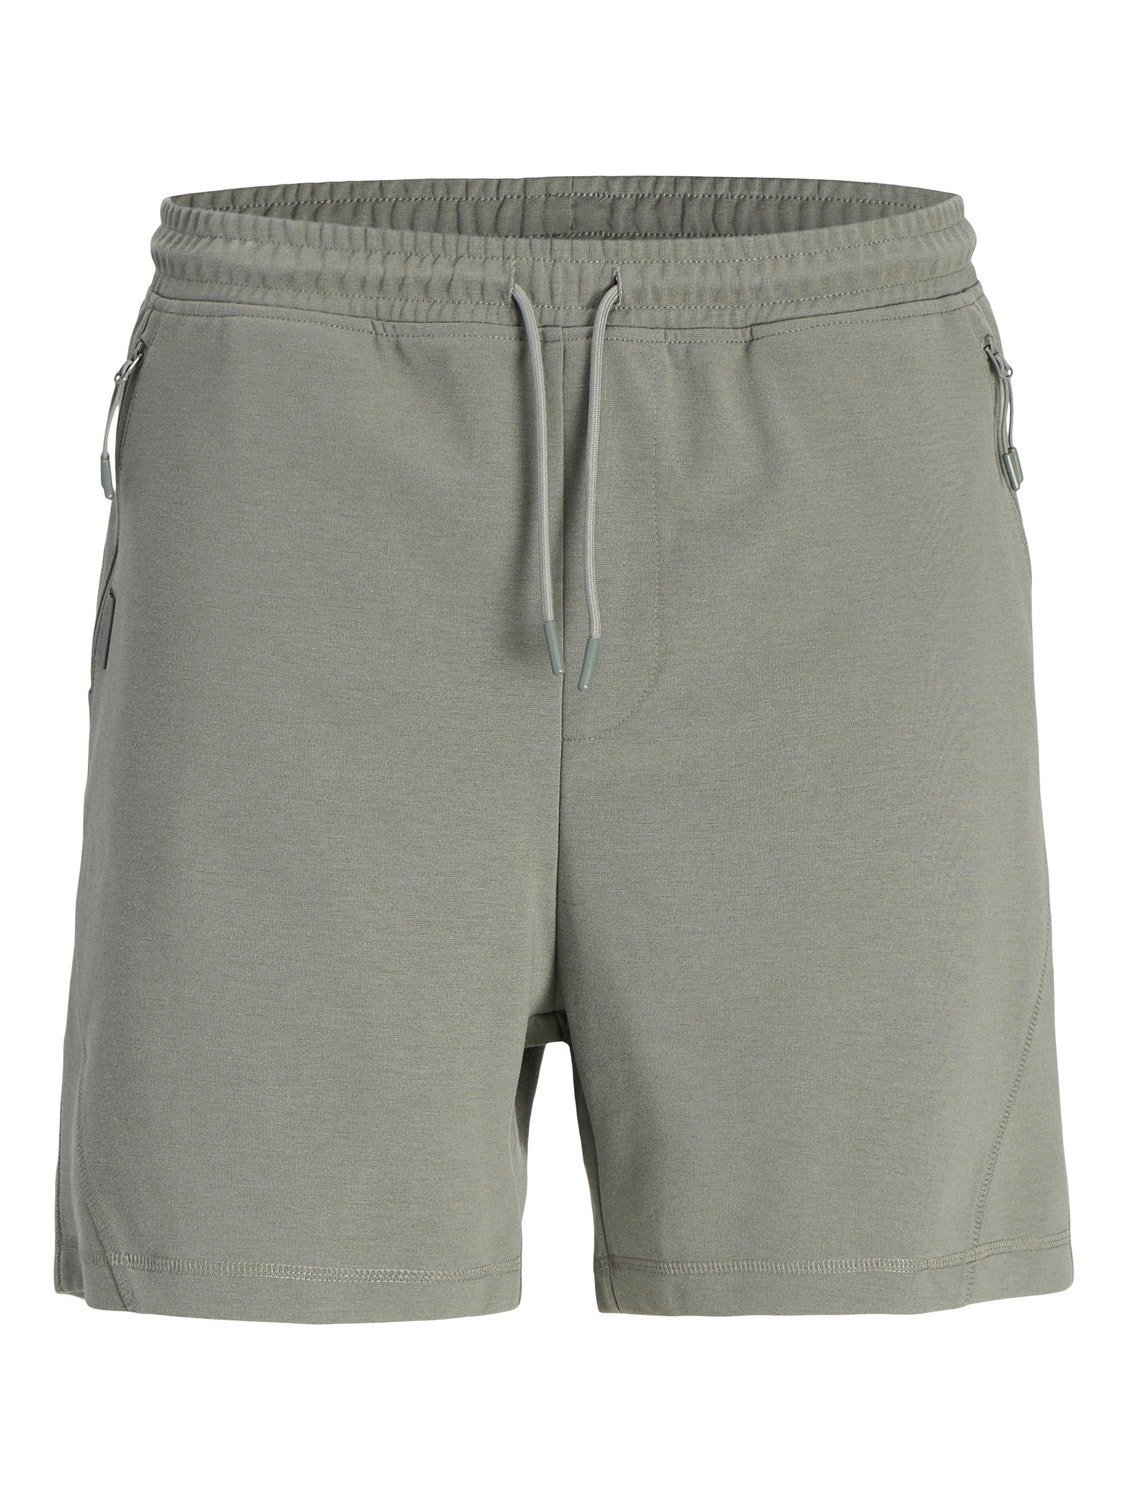 Jack & Jones Tight Fit Sweat shorts Mini -Agave Green - 12256886